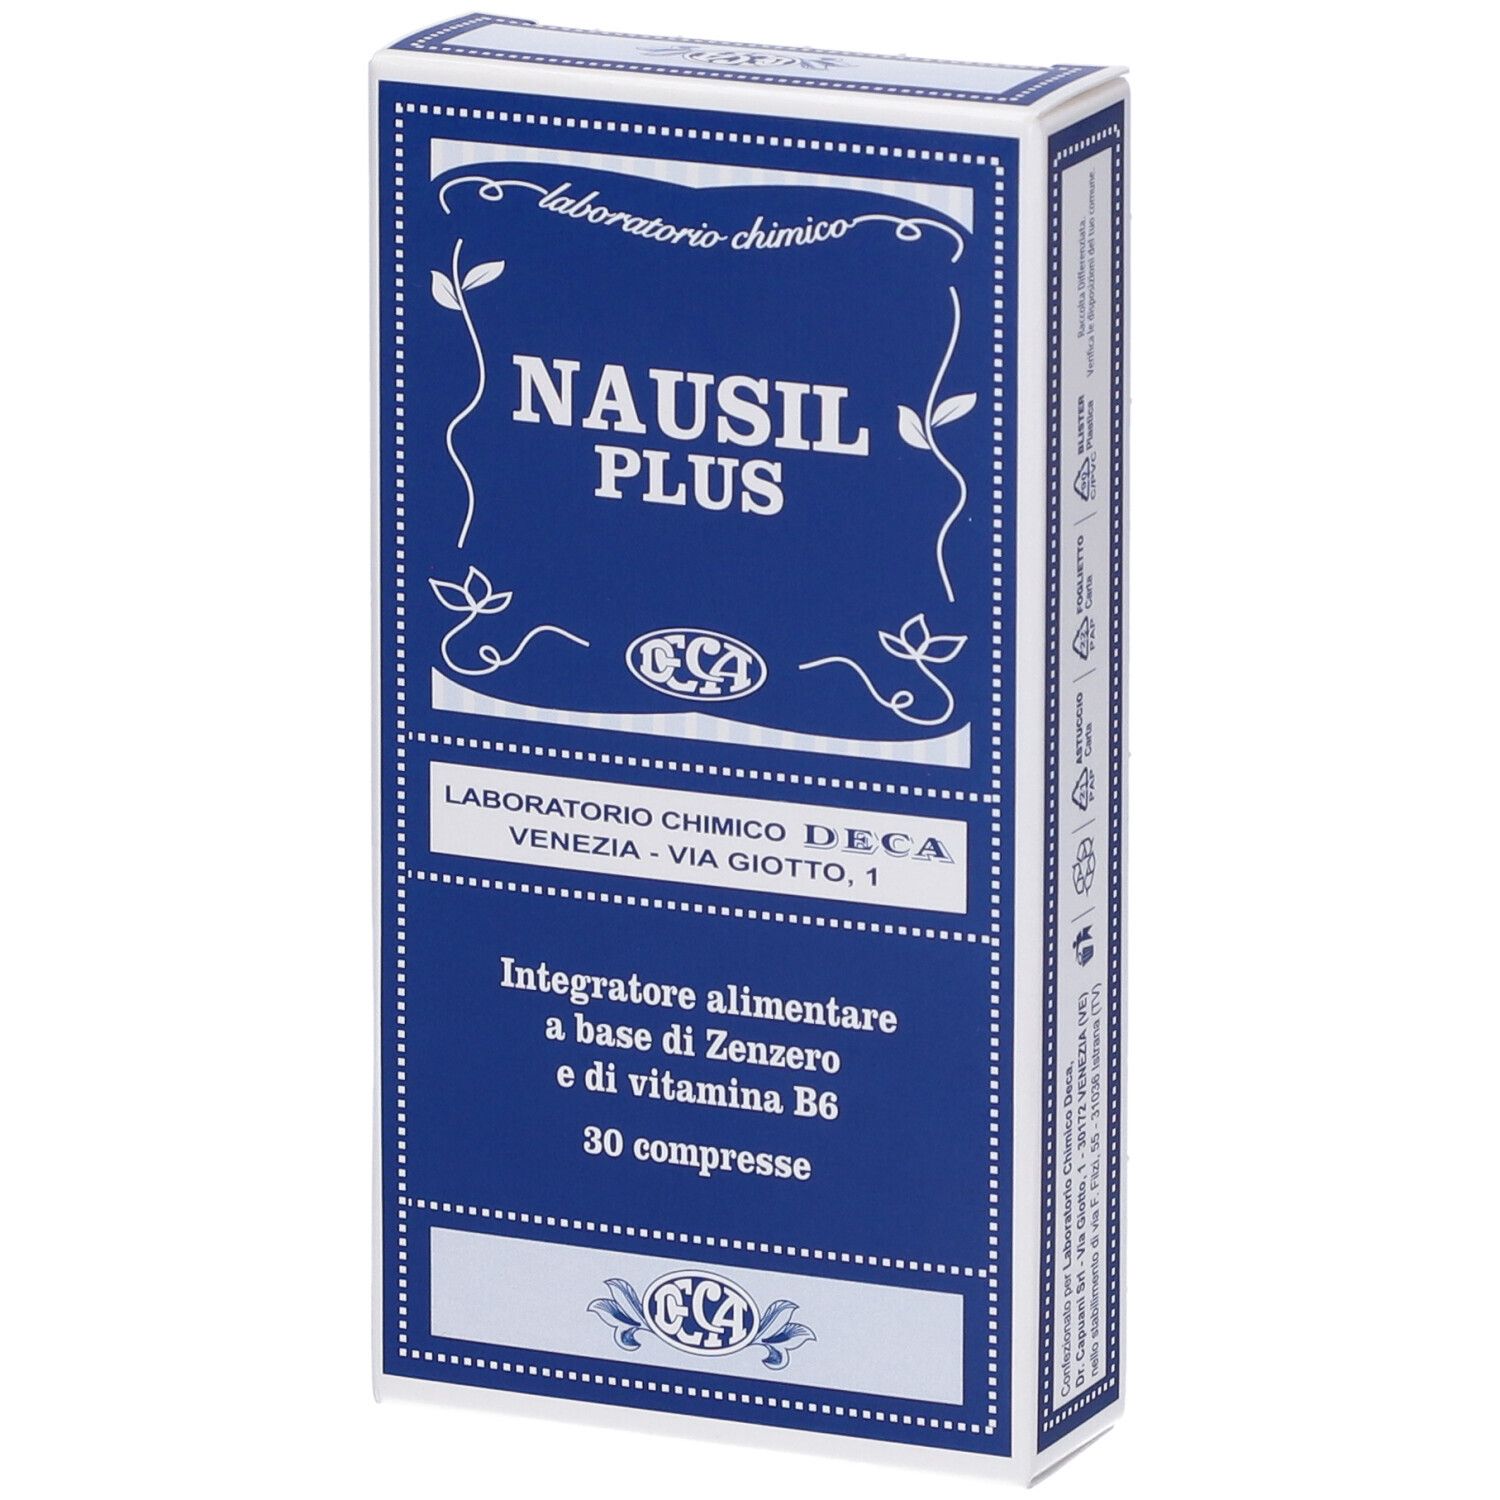 Nausil Plus